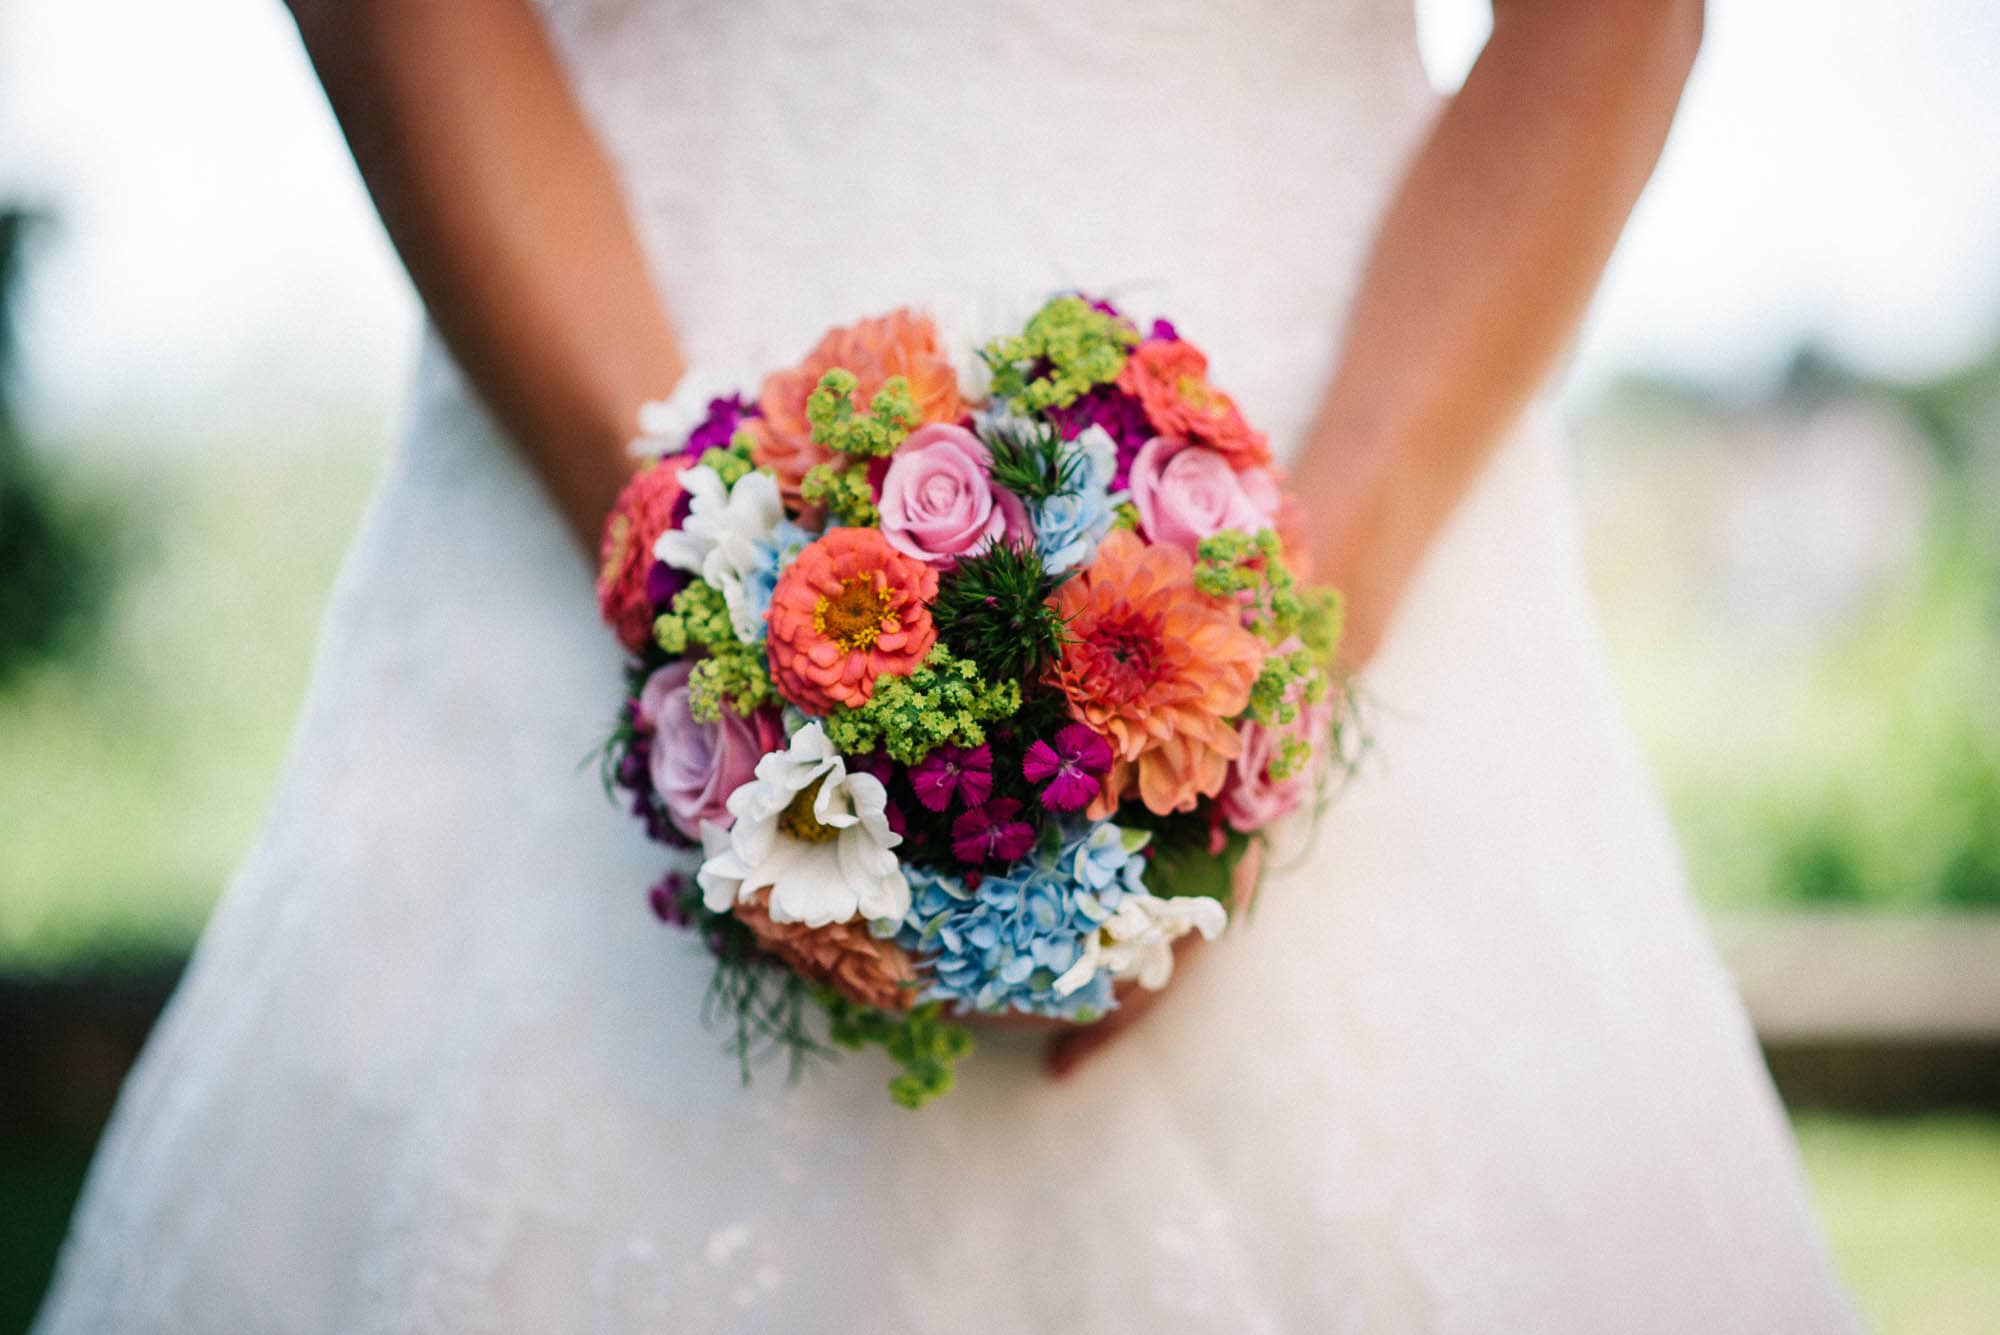 Braut hält einen bunten Blumenstrauß in ihren Hochzeitsbildern.